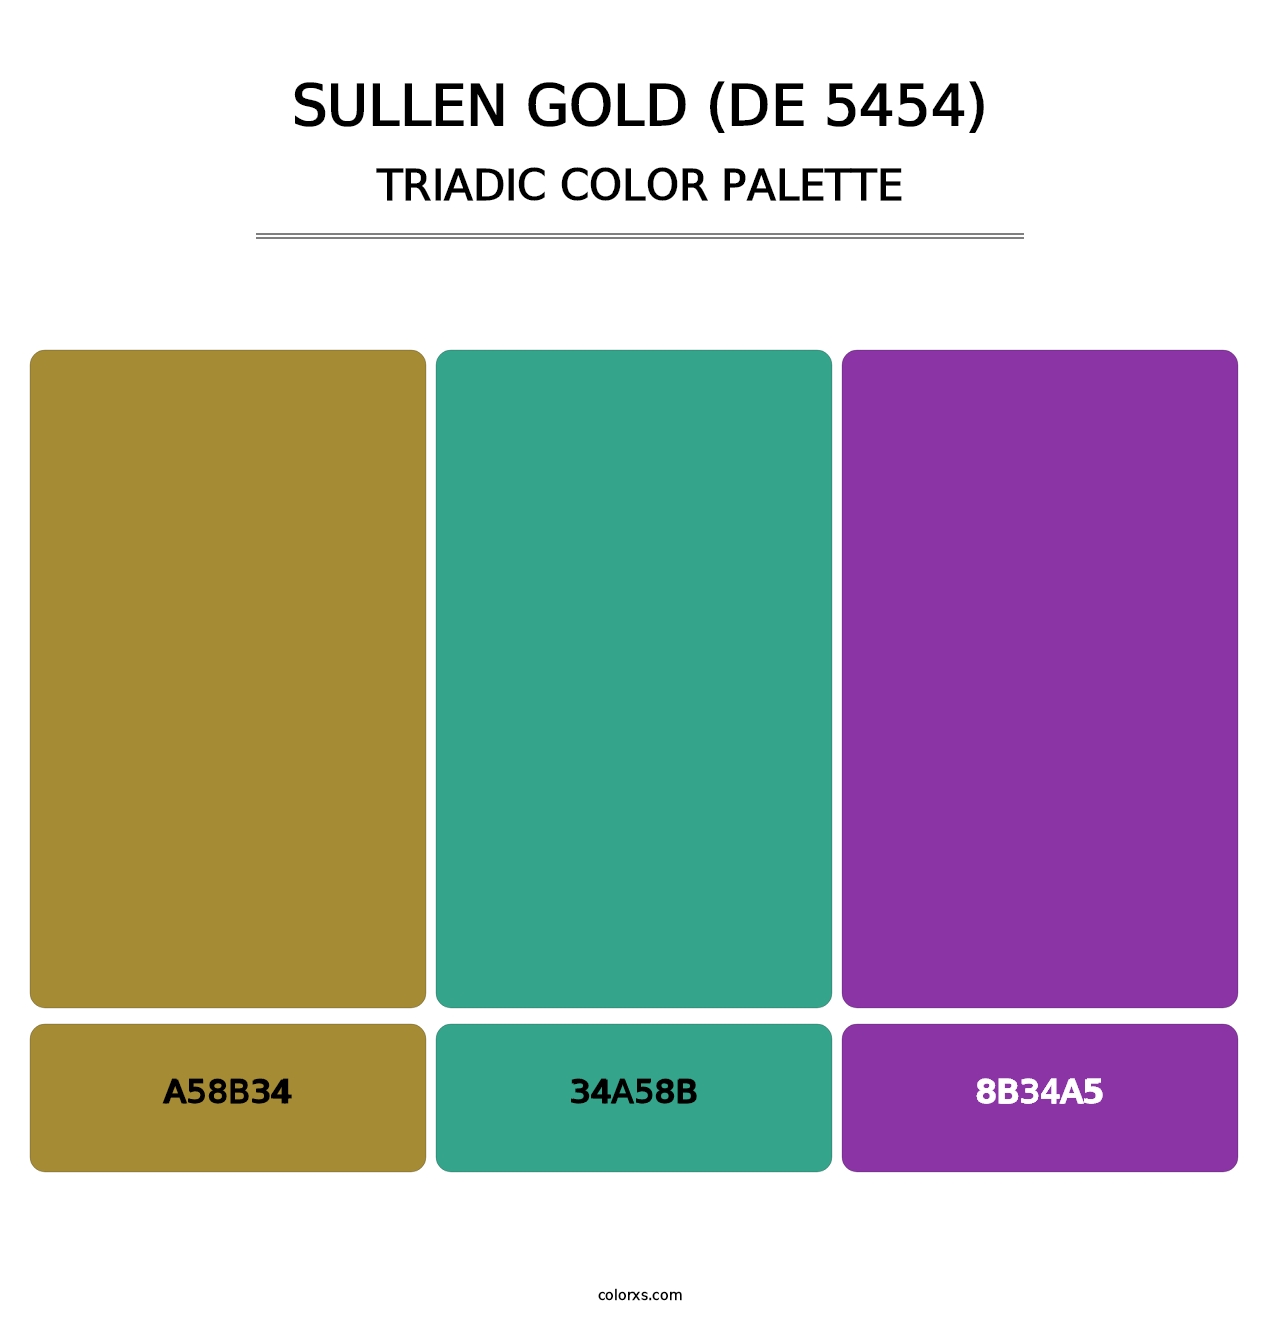 Sullen Gold (DE 5454) - Triadic Color Palette